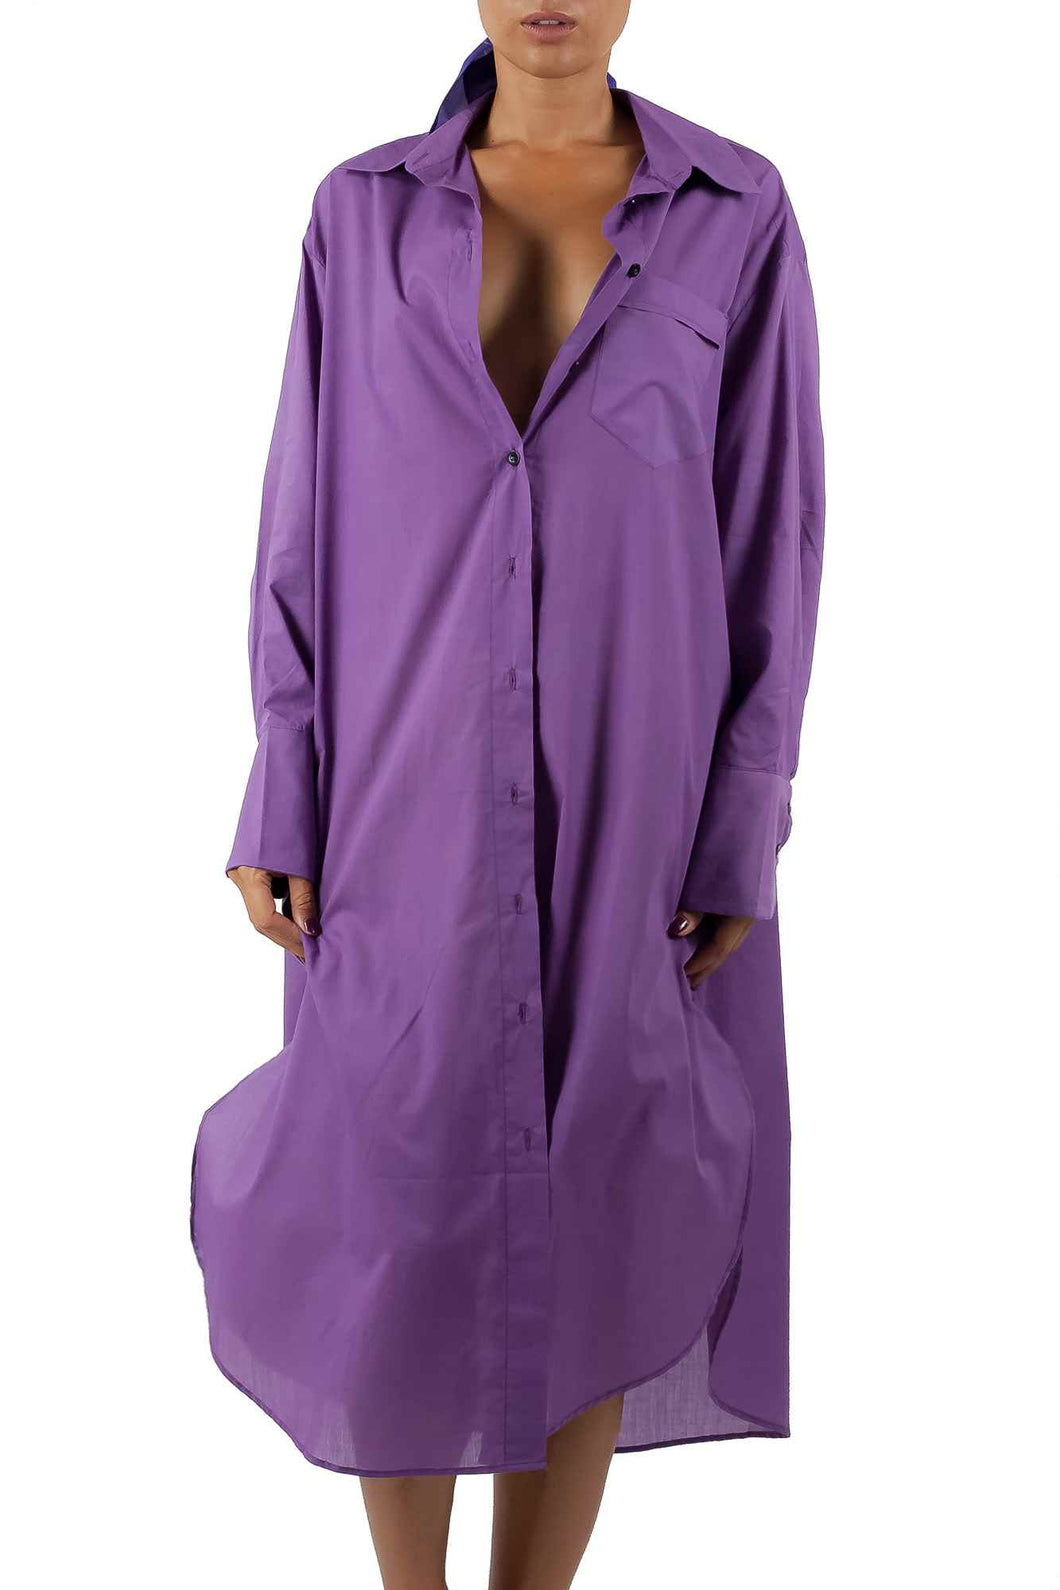 MAXI SHIRT COTTON DRESS plain violet-tulip